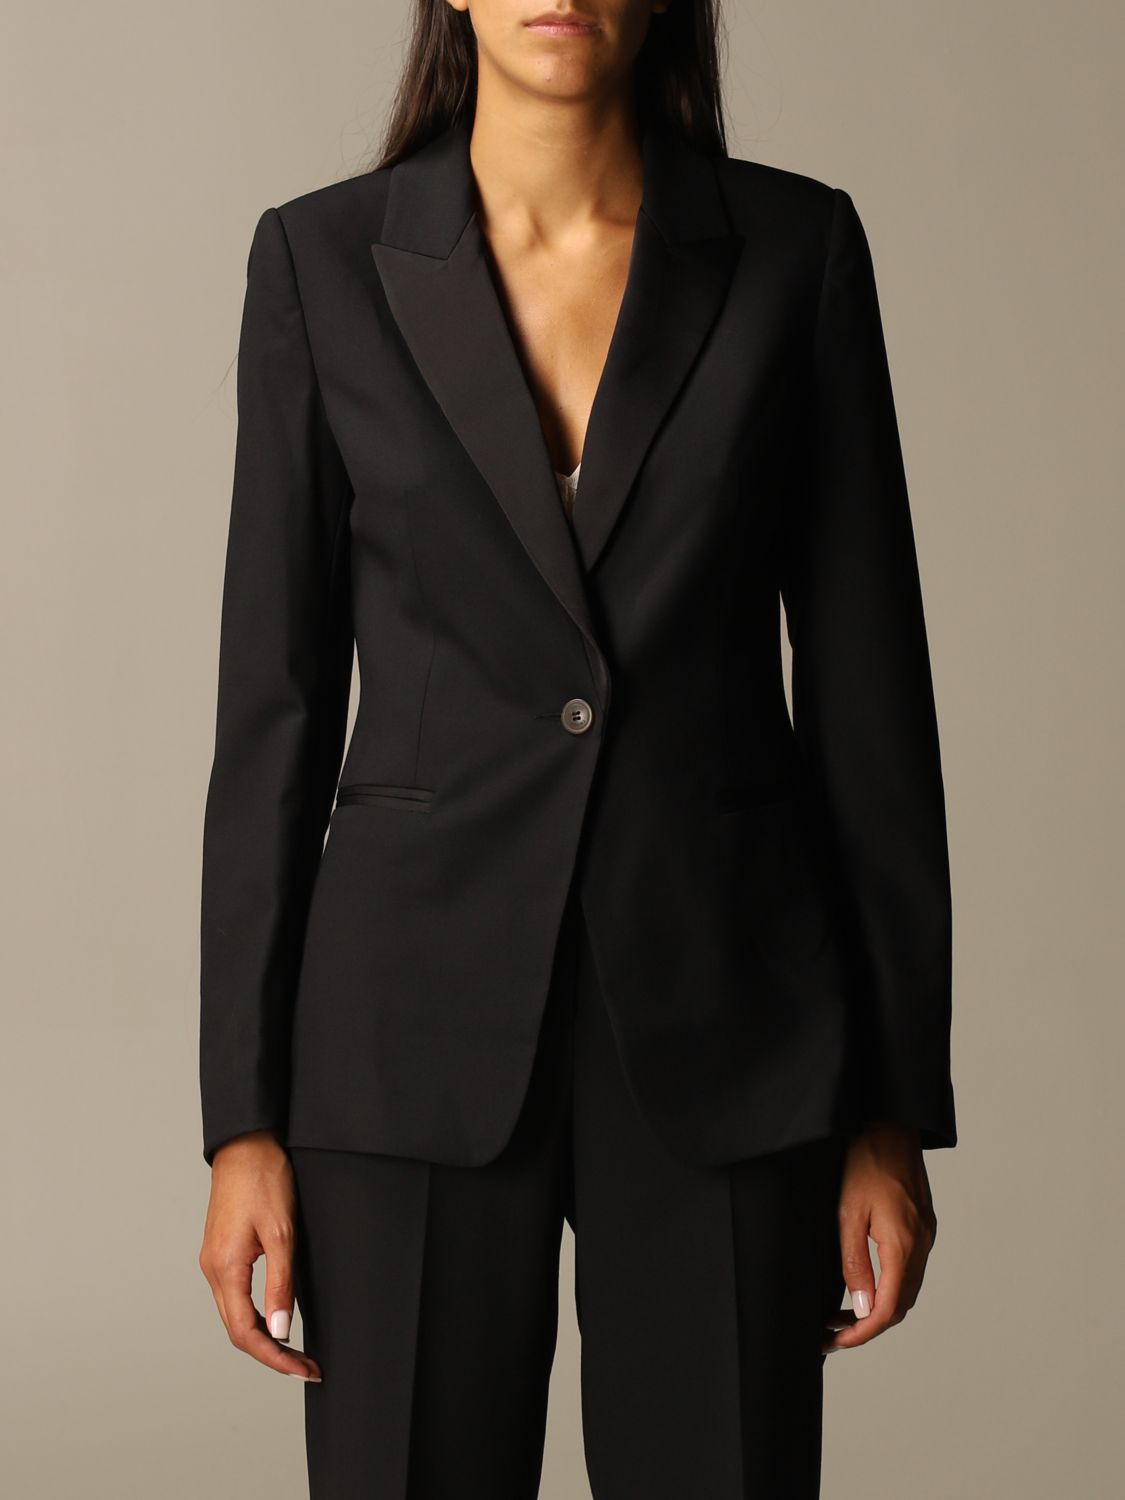 Twin Set Synthetik Polyester blazer in Schwarz Sakkos und Anzugsjacken Damen Bekleidung Jacken Blazer 